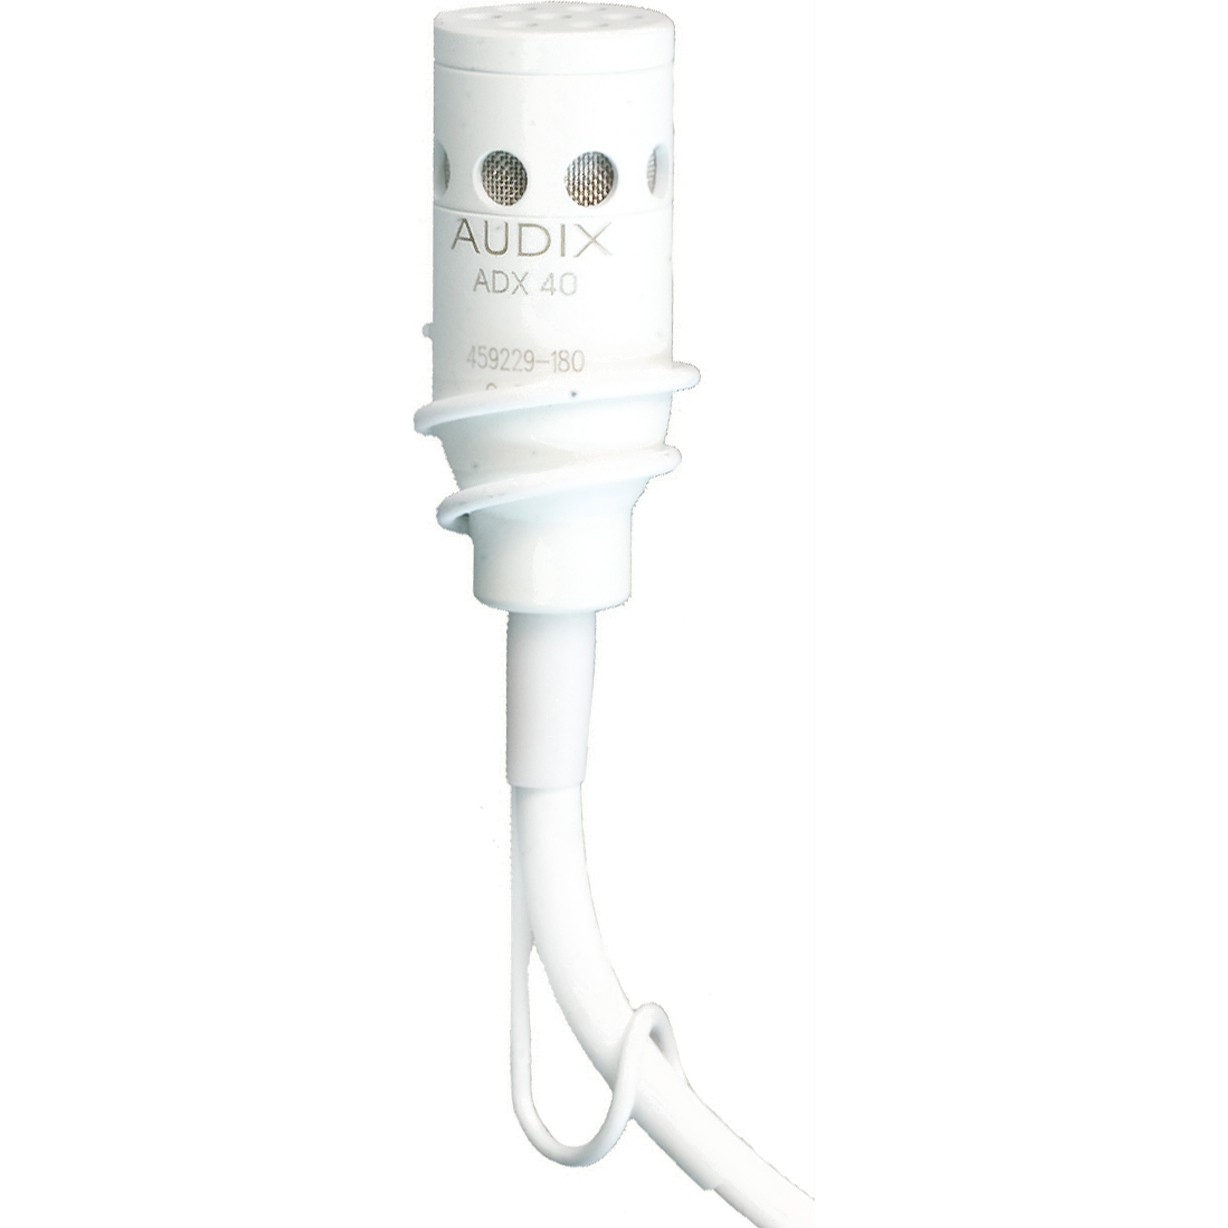 Студийные микрофоны AUDIX ADX40WHC микрофон mobicent bm 800 c ветрозащитой кабелем и переходником для телефона